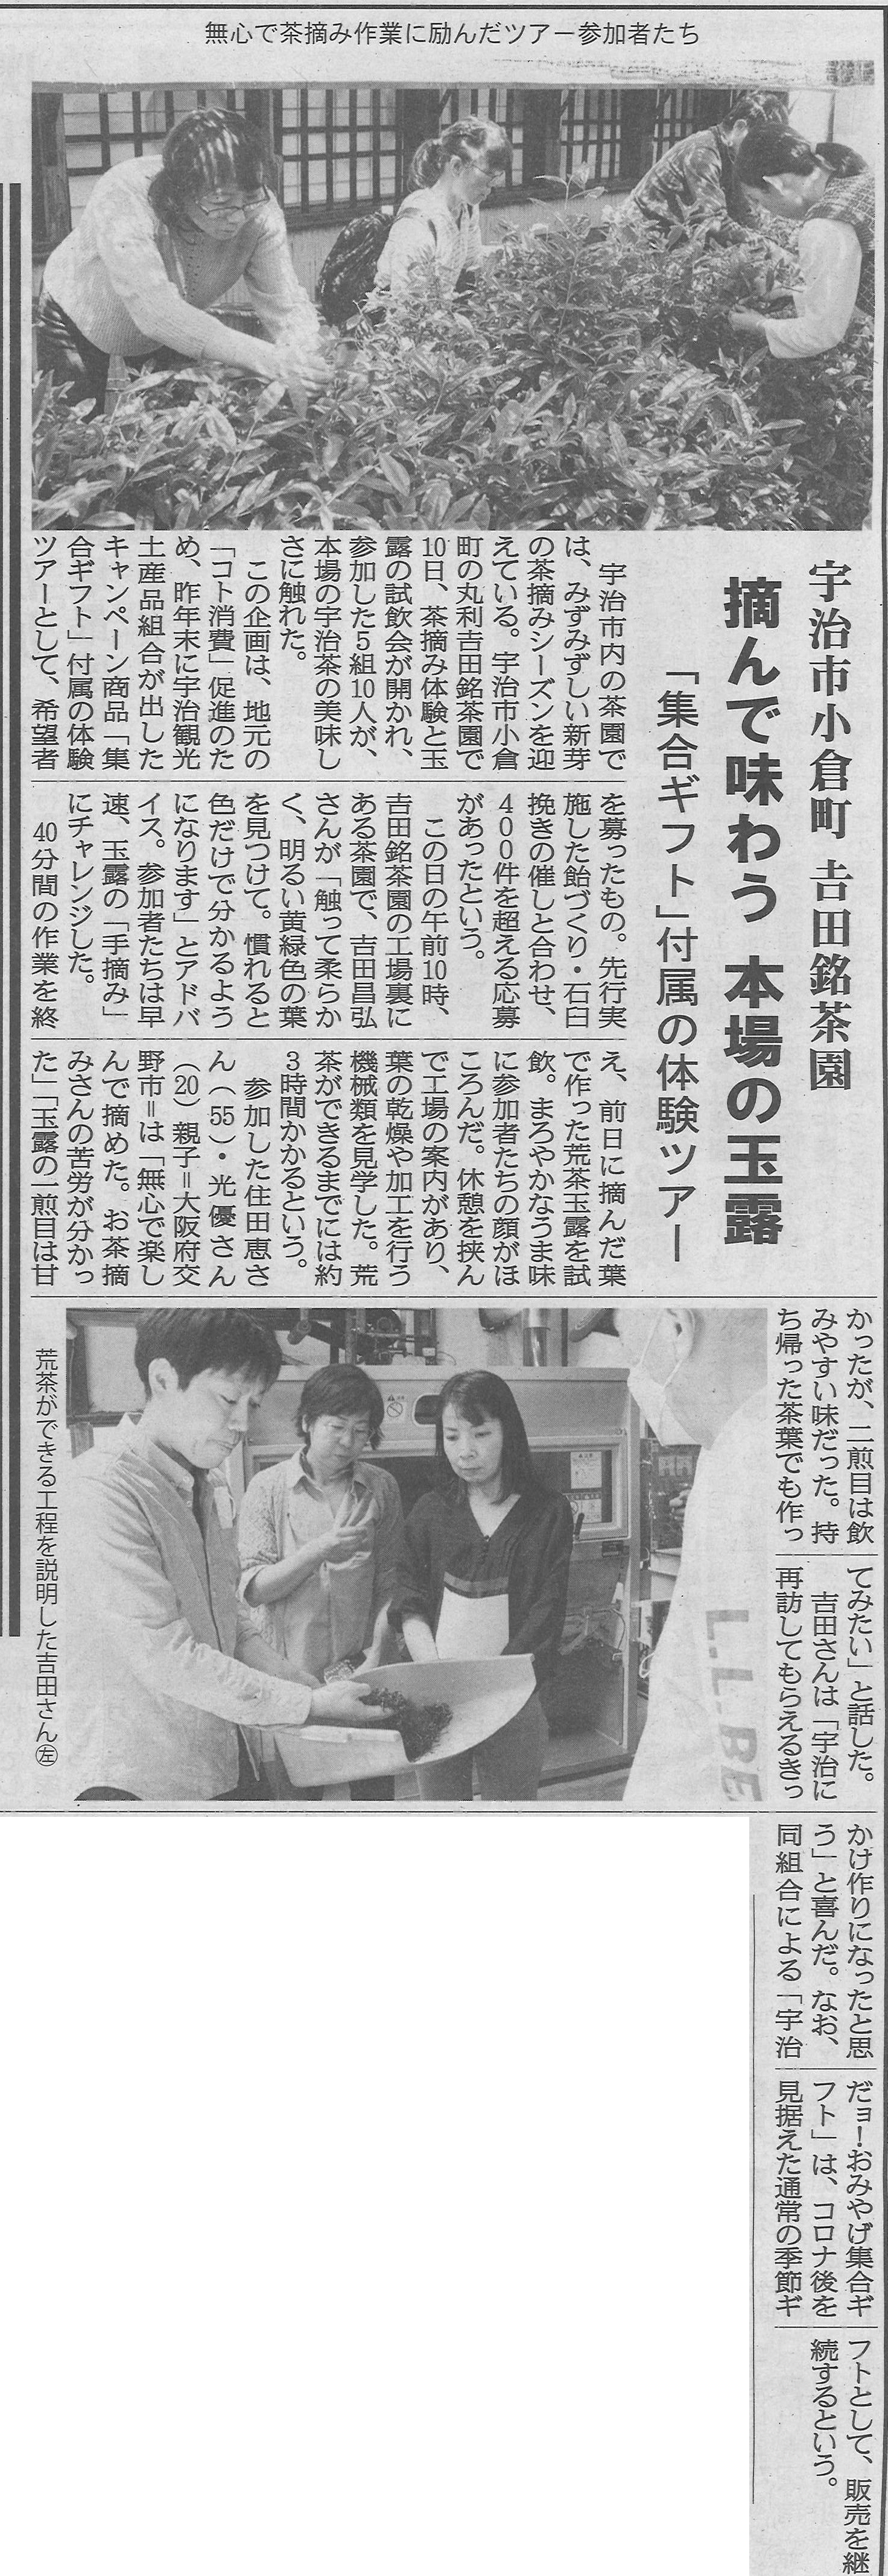 5月11日 洛タイ新報にて、宇治観光土産品組合ギフト購入特典の茶摘み体験の様子が掲載